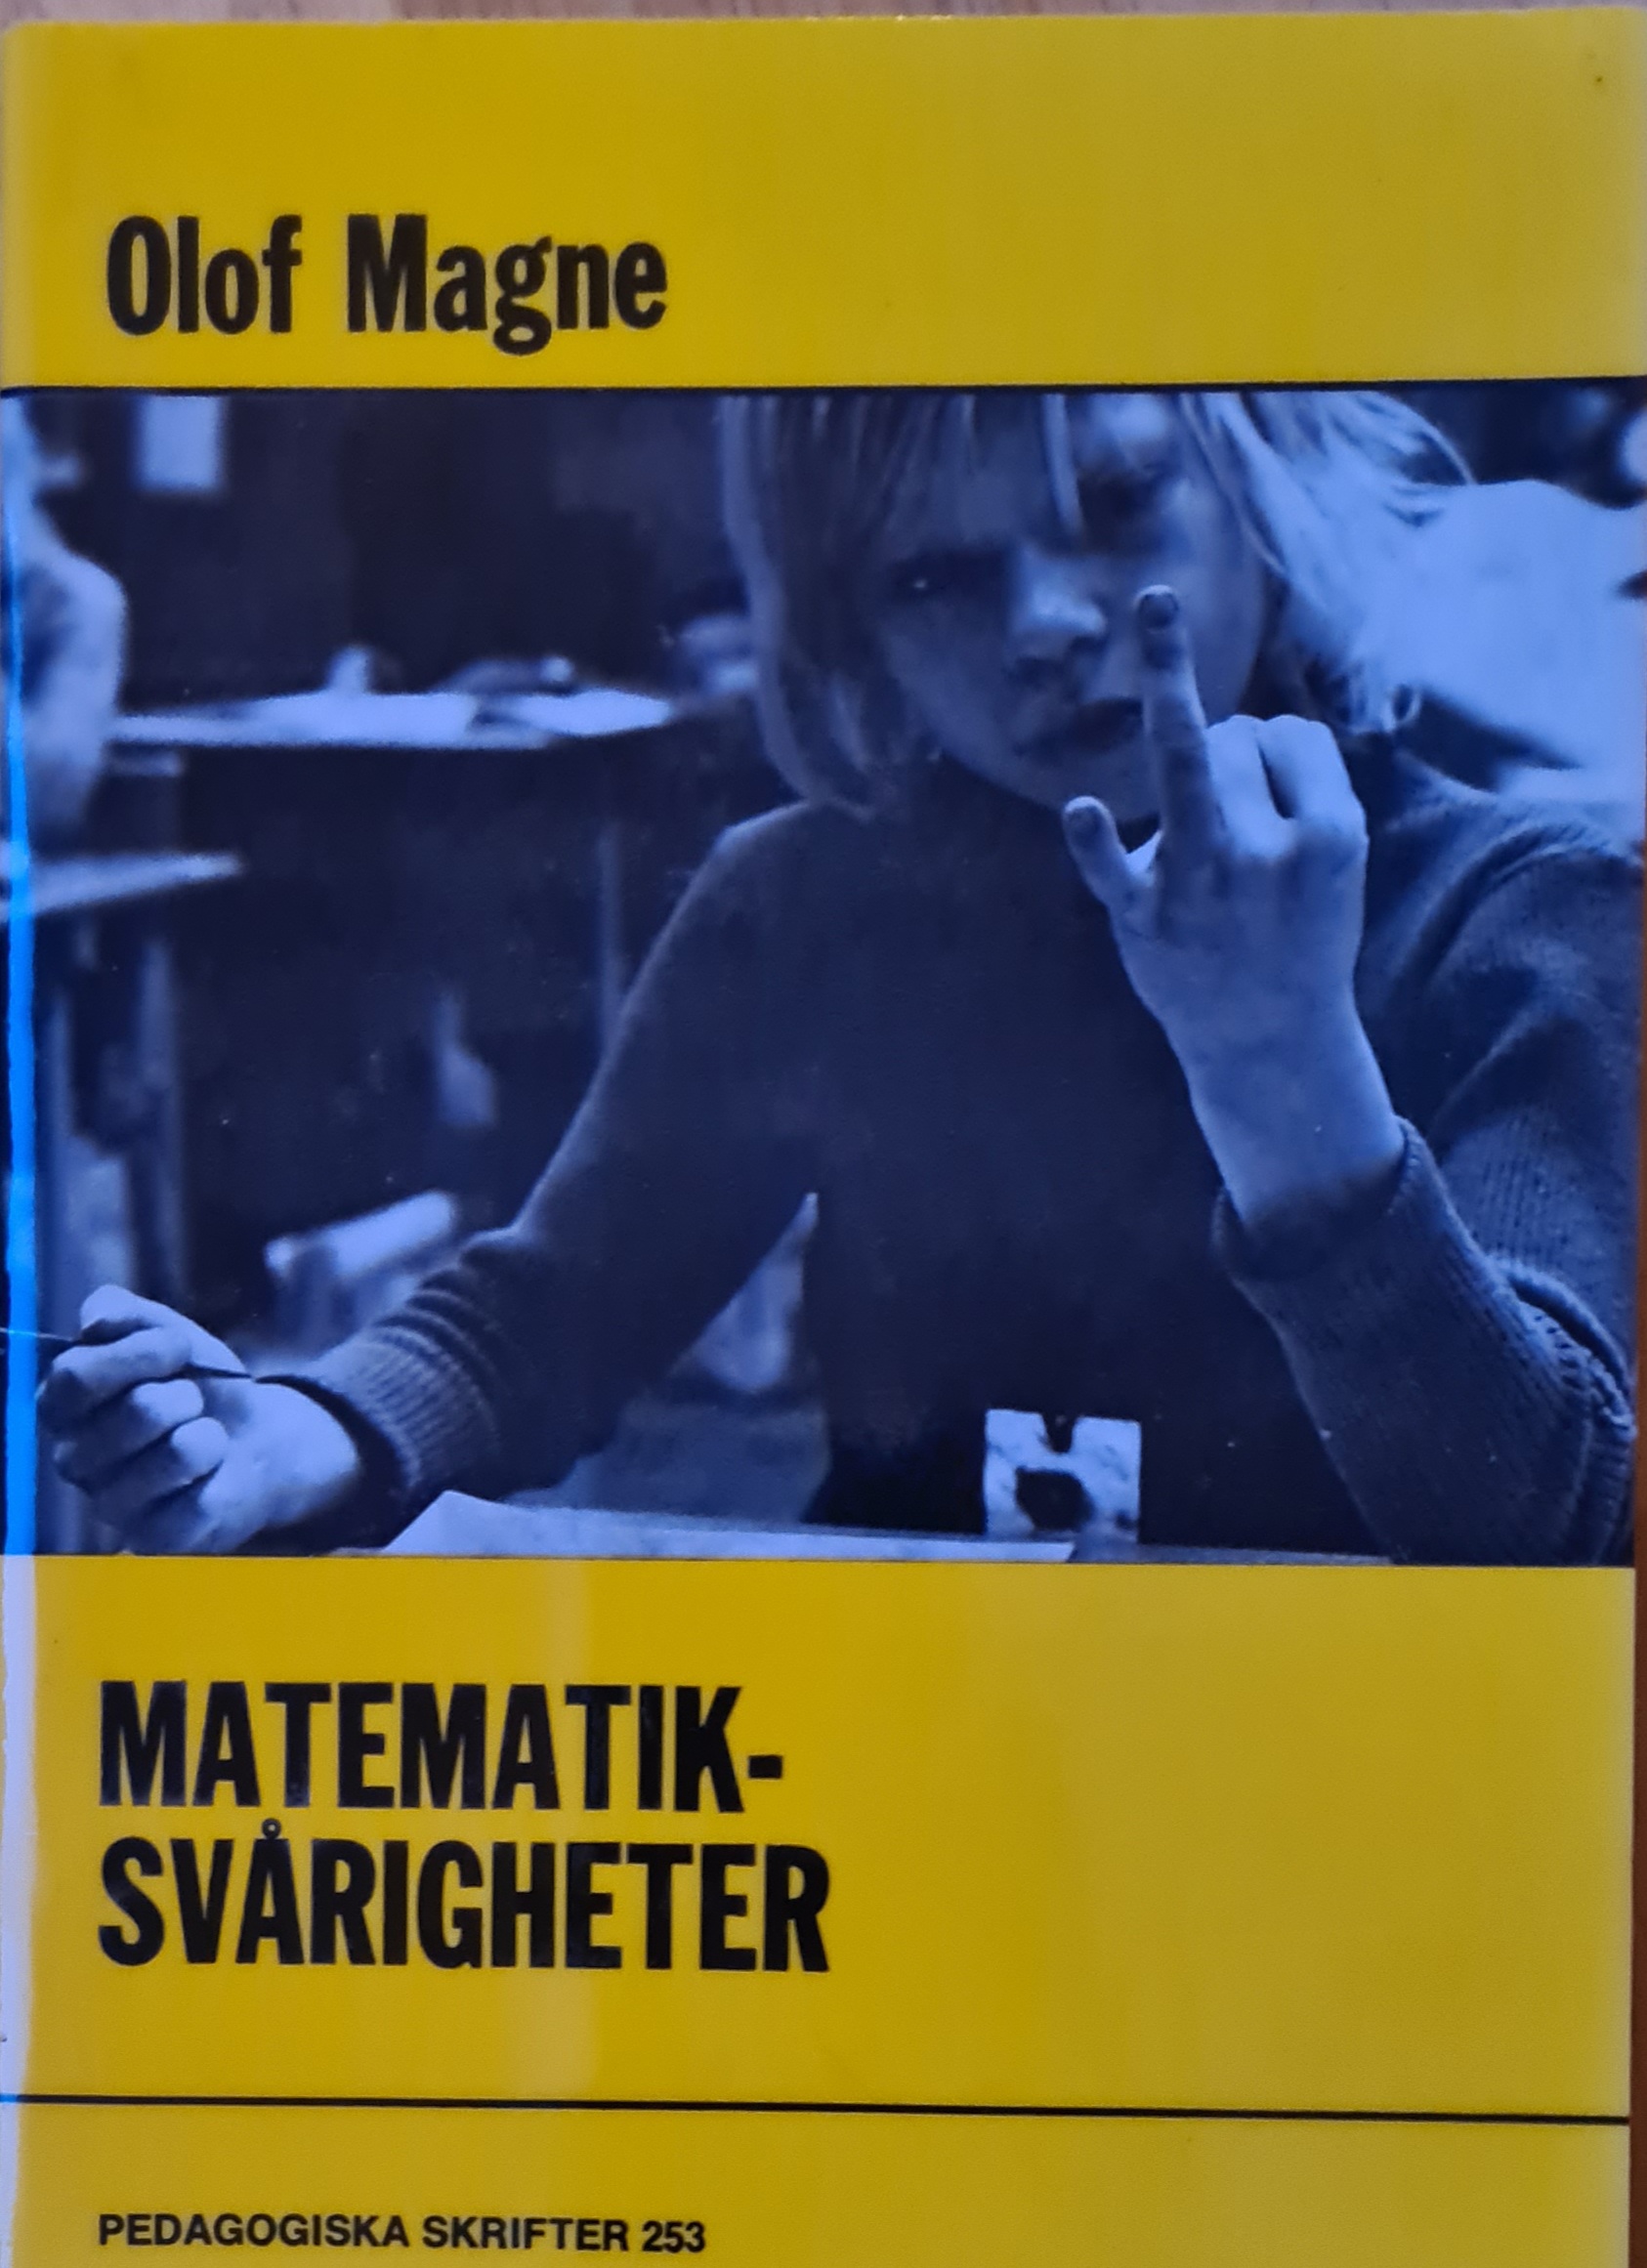 Matematiksvårigheter; Olof Magne; 1973